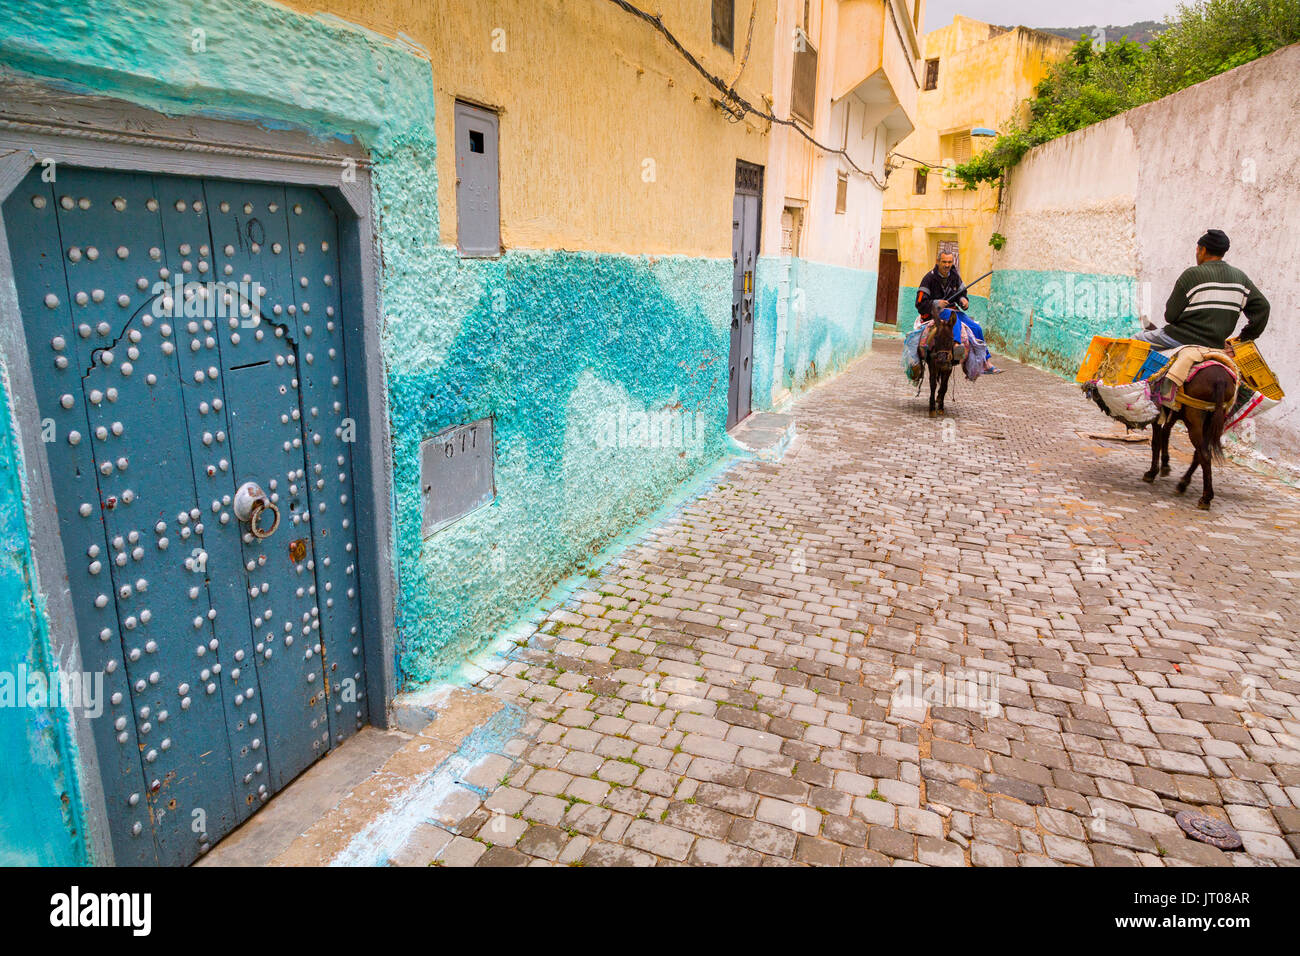 Herkömmliche blaue Tür eines Hauses. Mann, einen Esel, der das Leben auf der Straße Szene, Moulay Idriss. Marokko, Maghreb Nordafrika Stockfoto